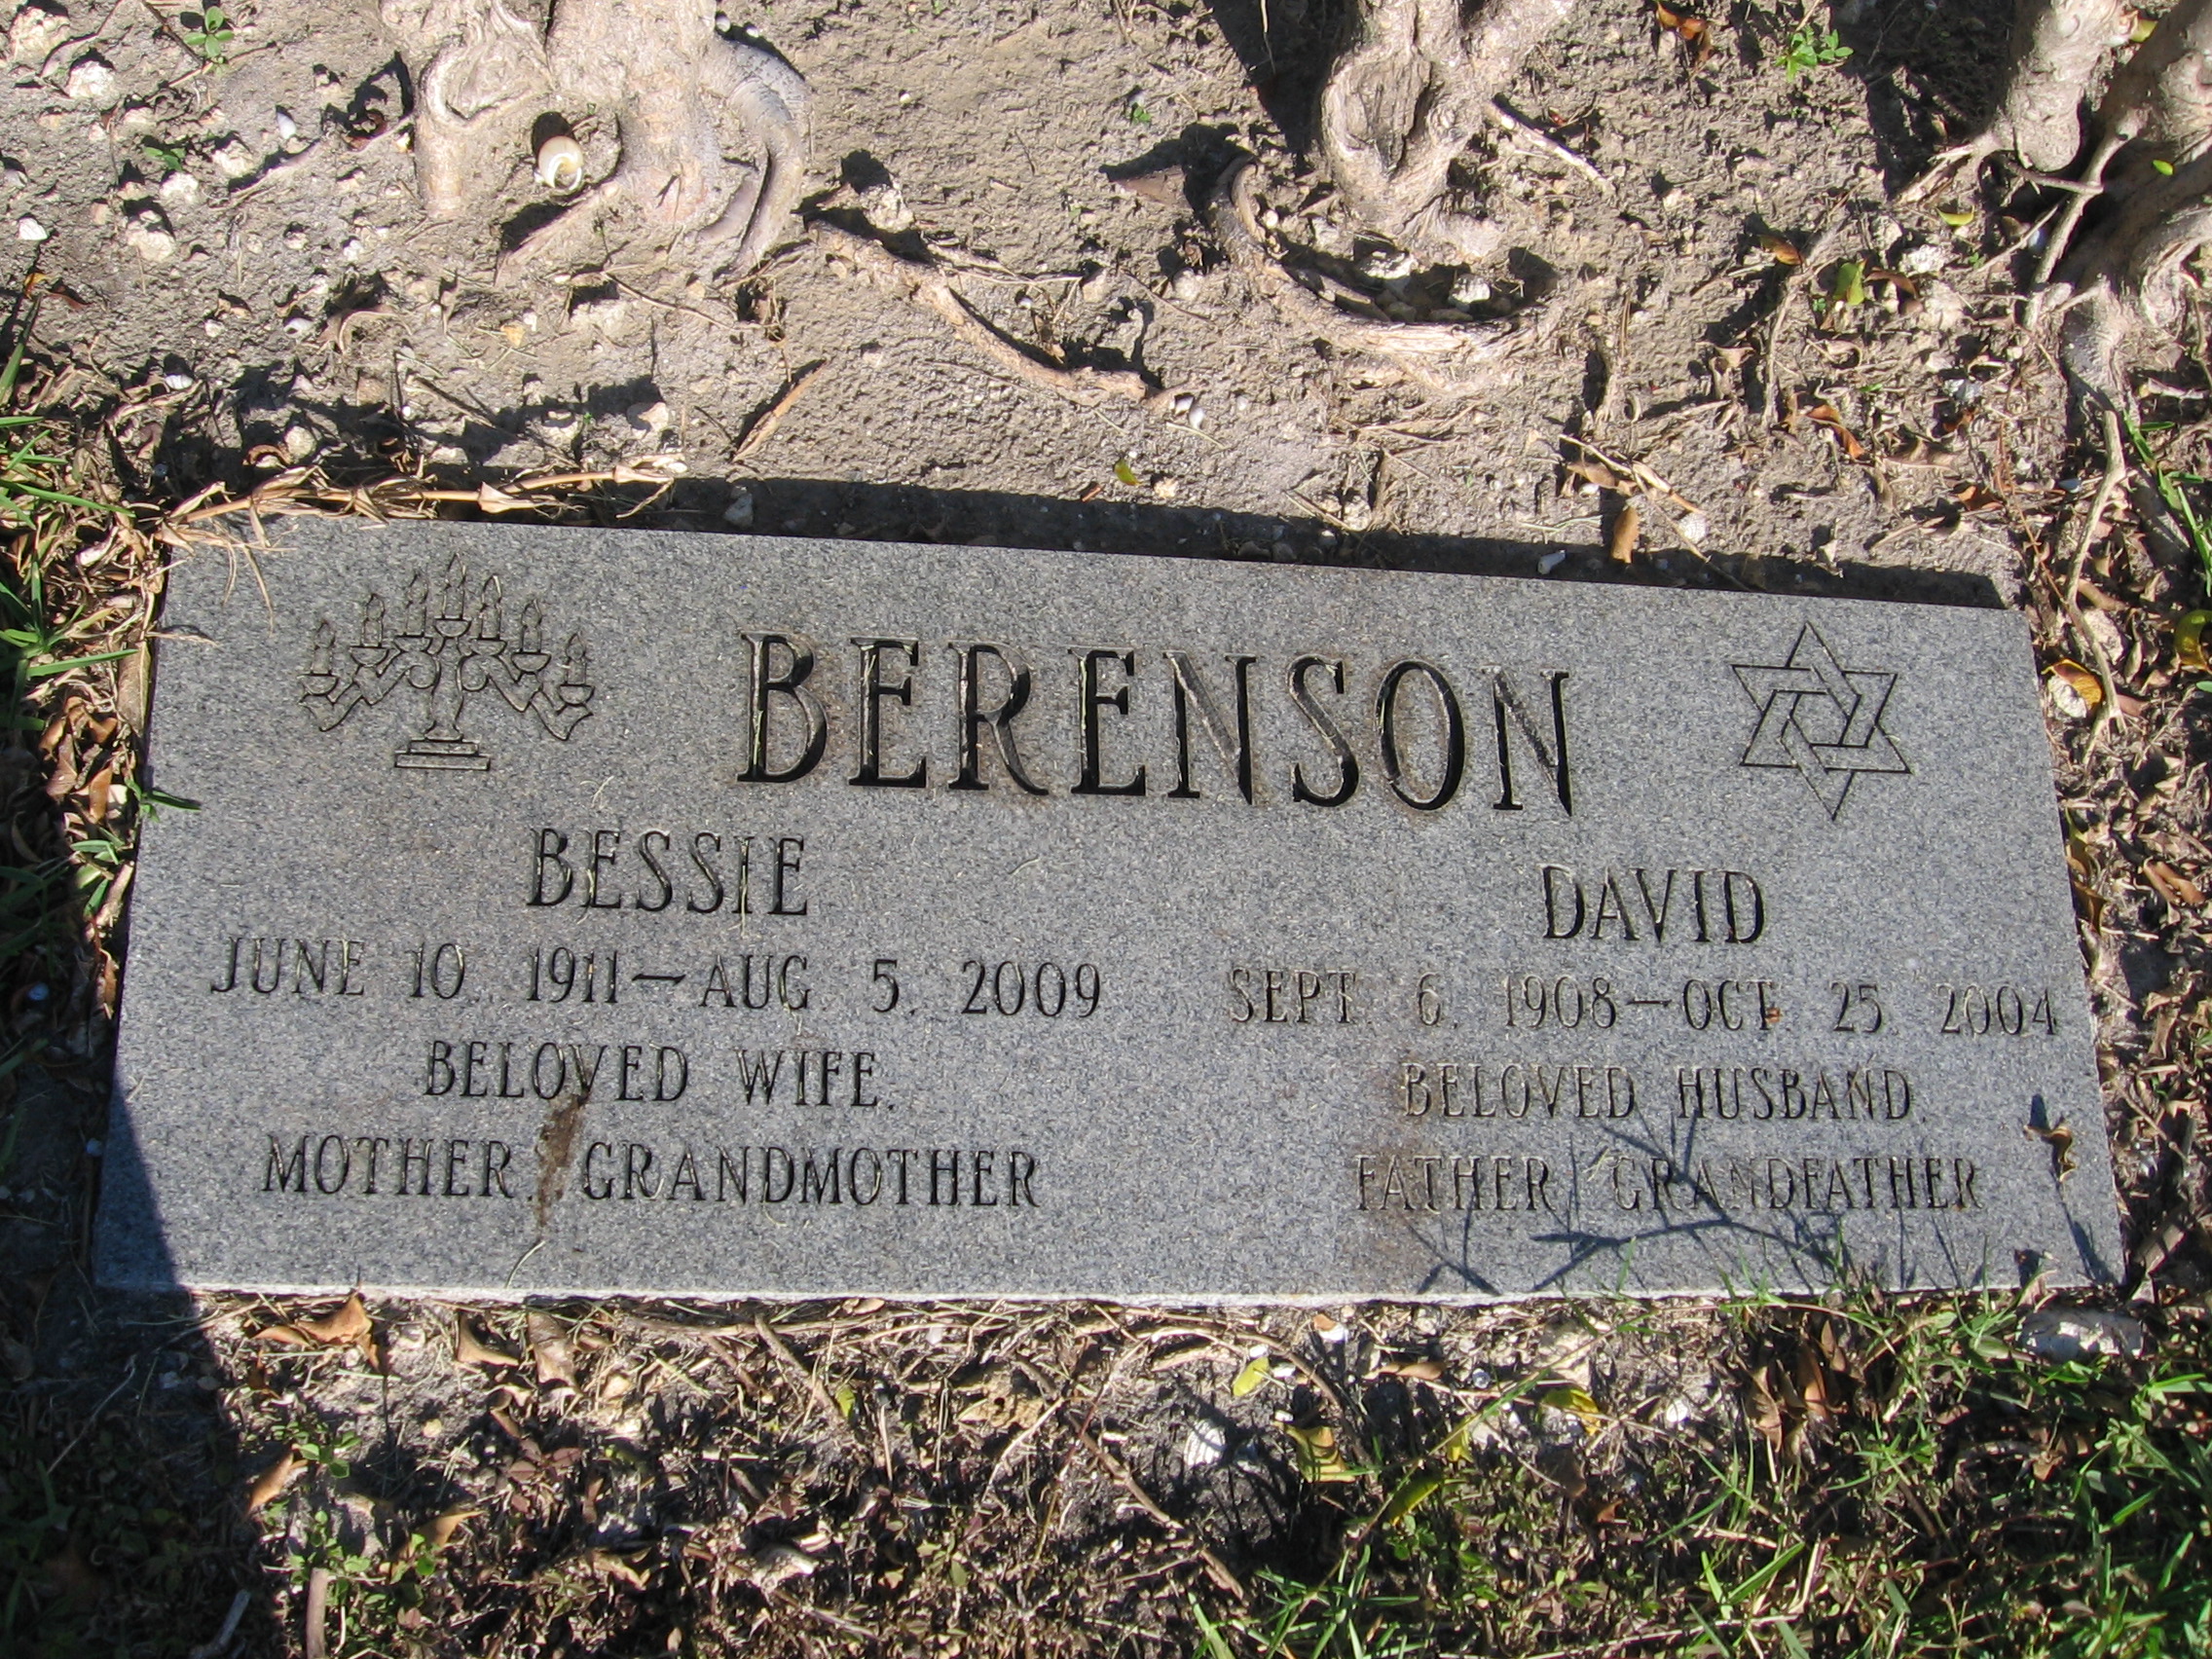 David Berenson